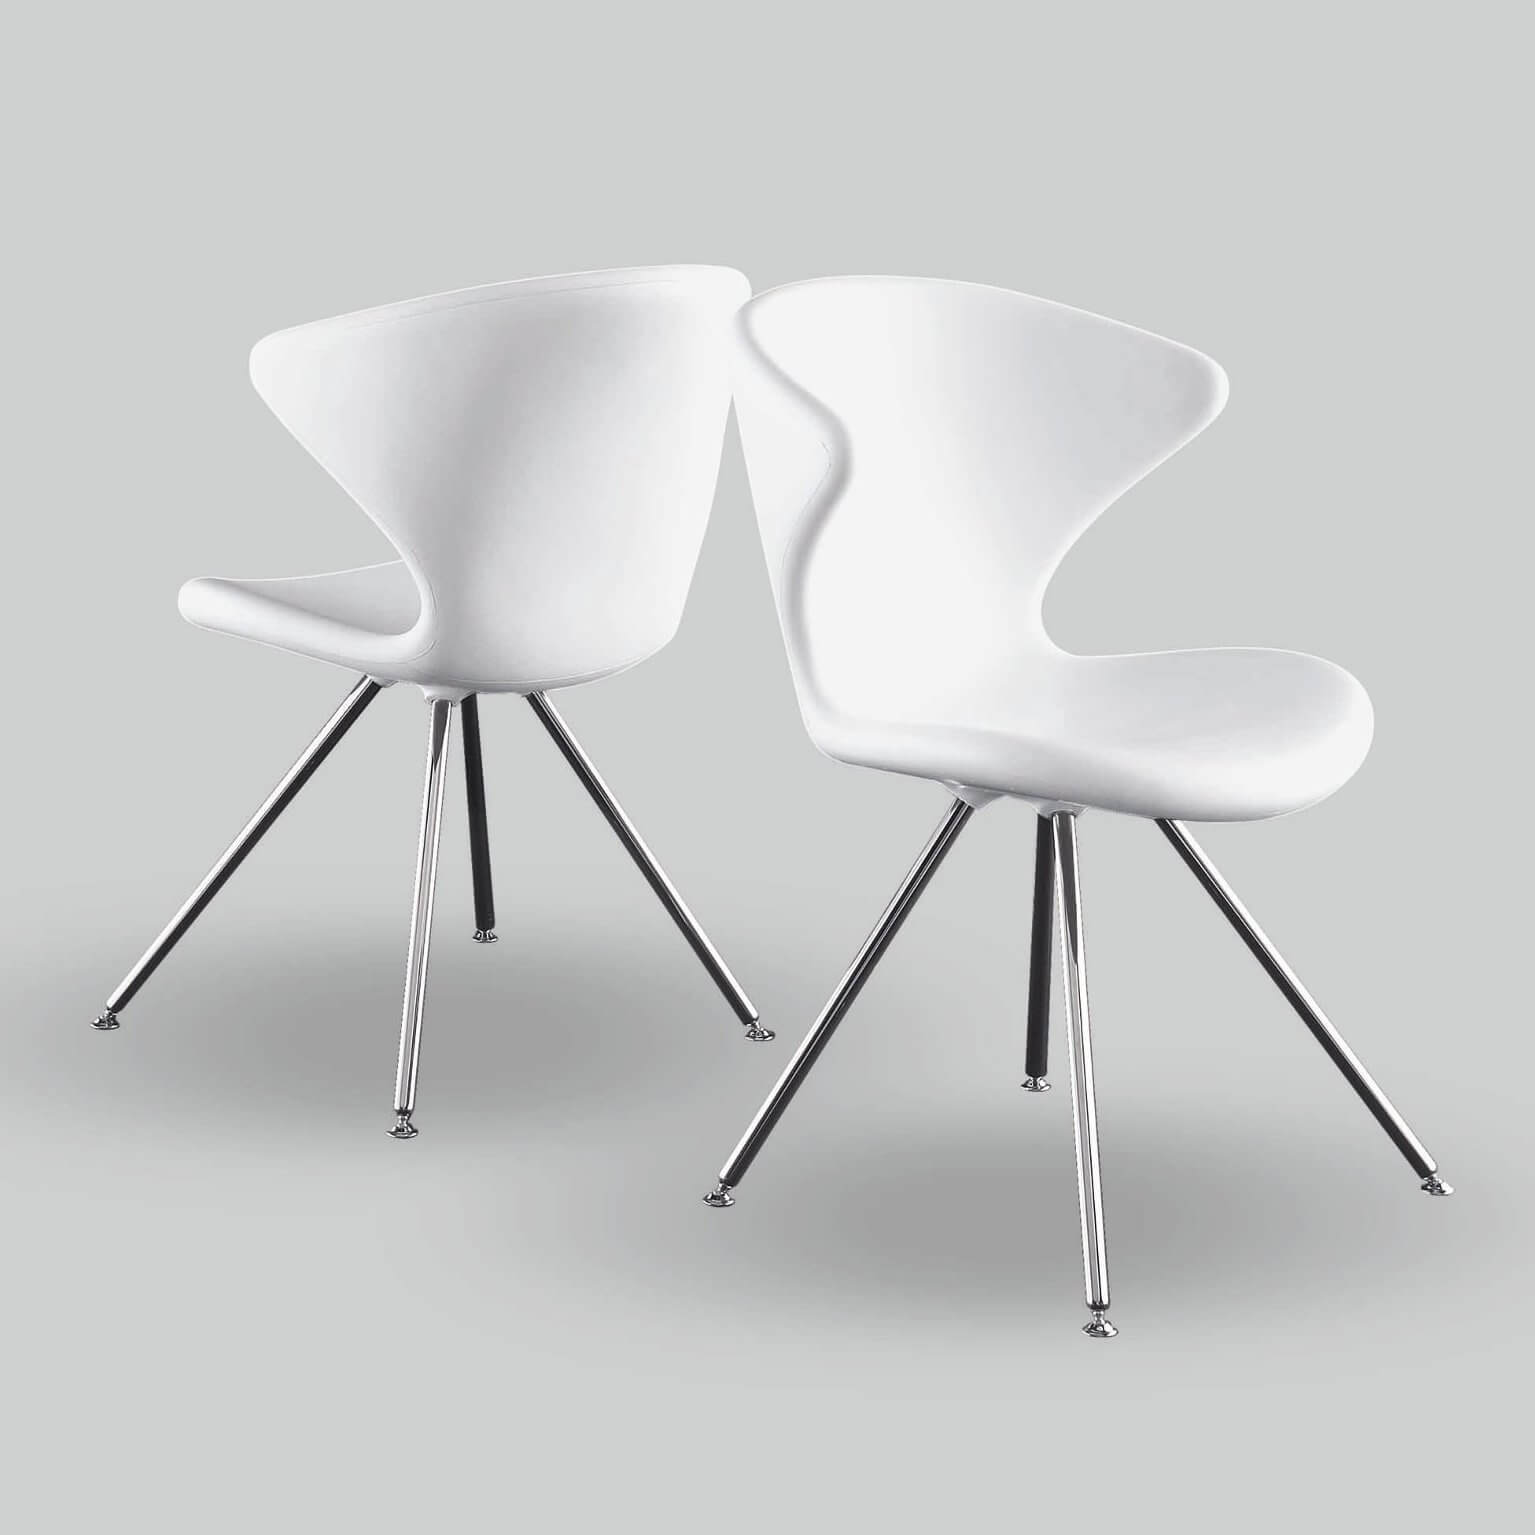 boom Reisbureau wetgeving Tonon Concept Chair | Woonpunt interieurs Zeist